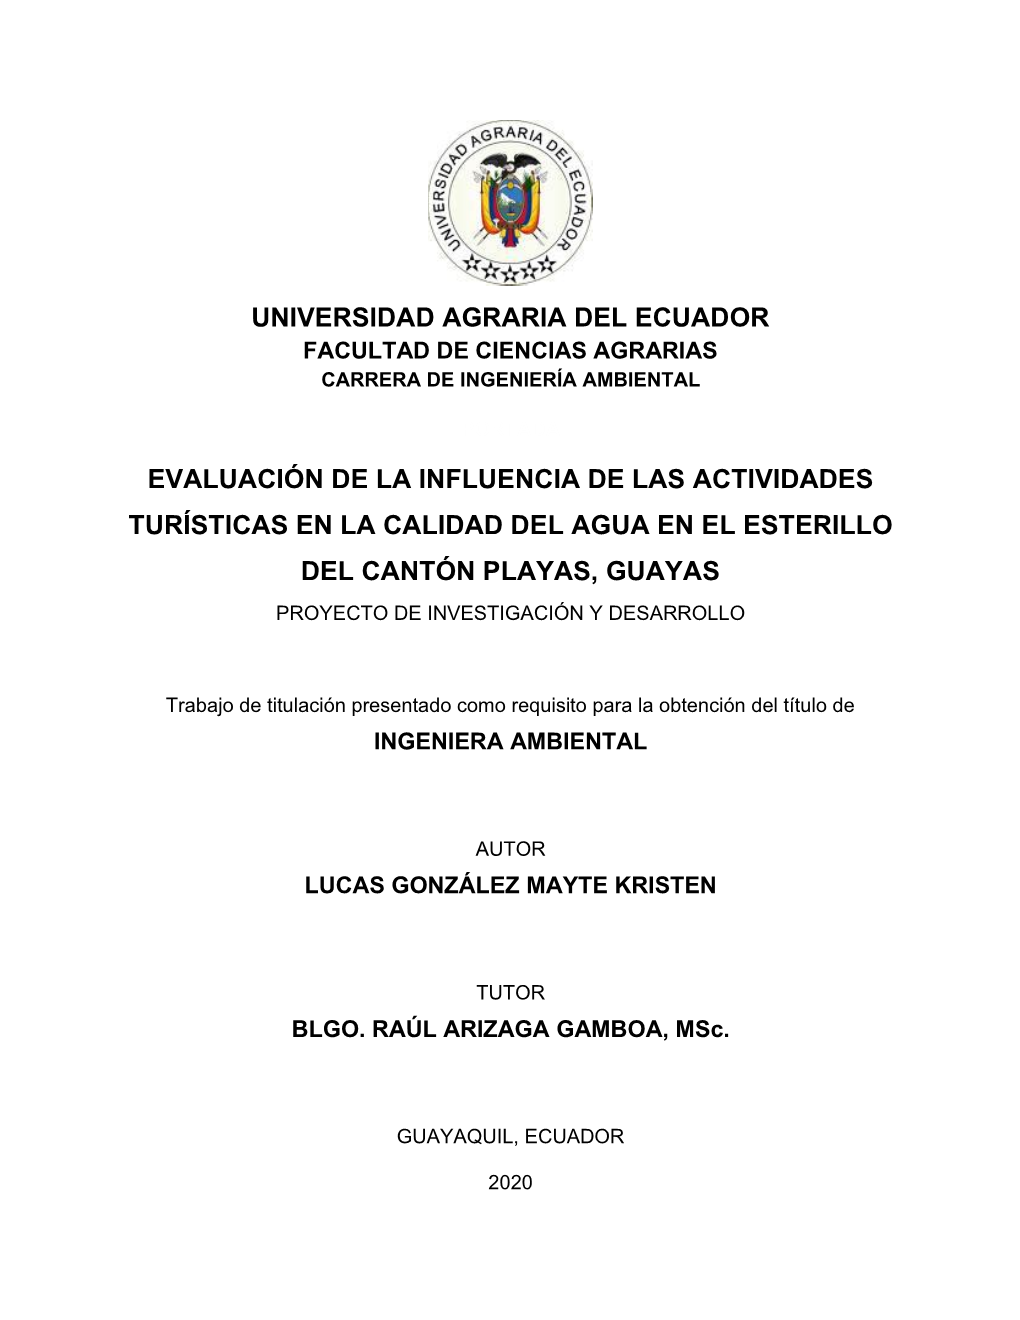 Universidad Agraria Del Ecuador Evaluación De La